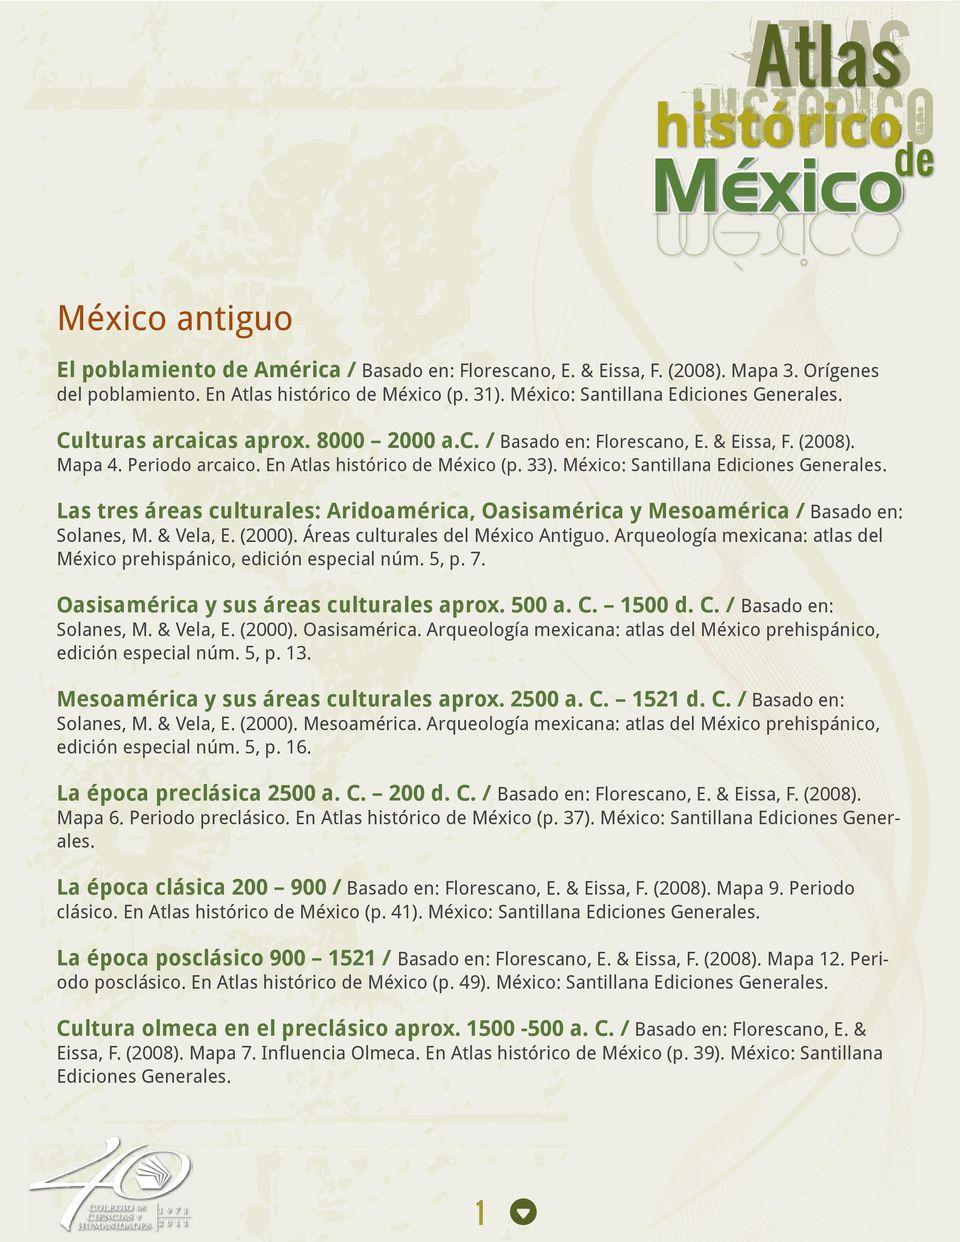 Las tres áreas culturales: Aridoamérica, Oasisamérica y Mesoamérica / Basado en: Solanes, M. & Vela, E. (2000). Áreas culturales del México Antiguo.